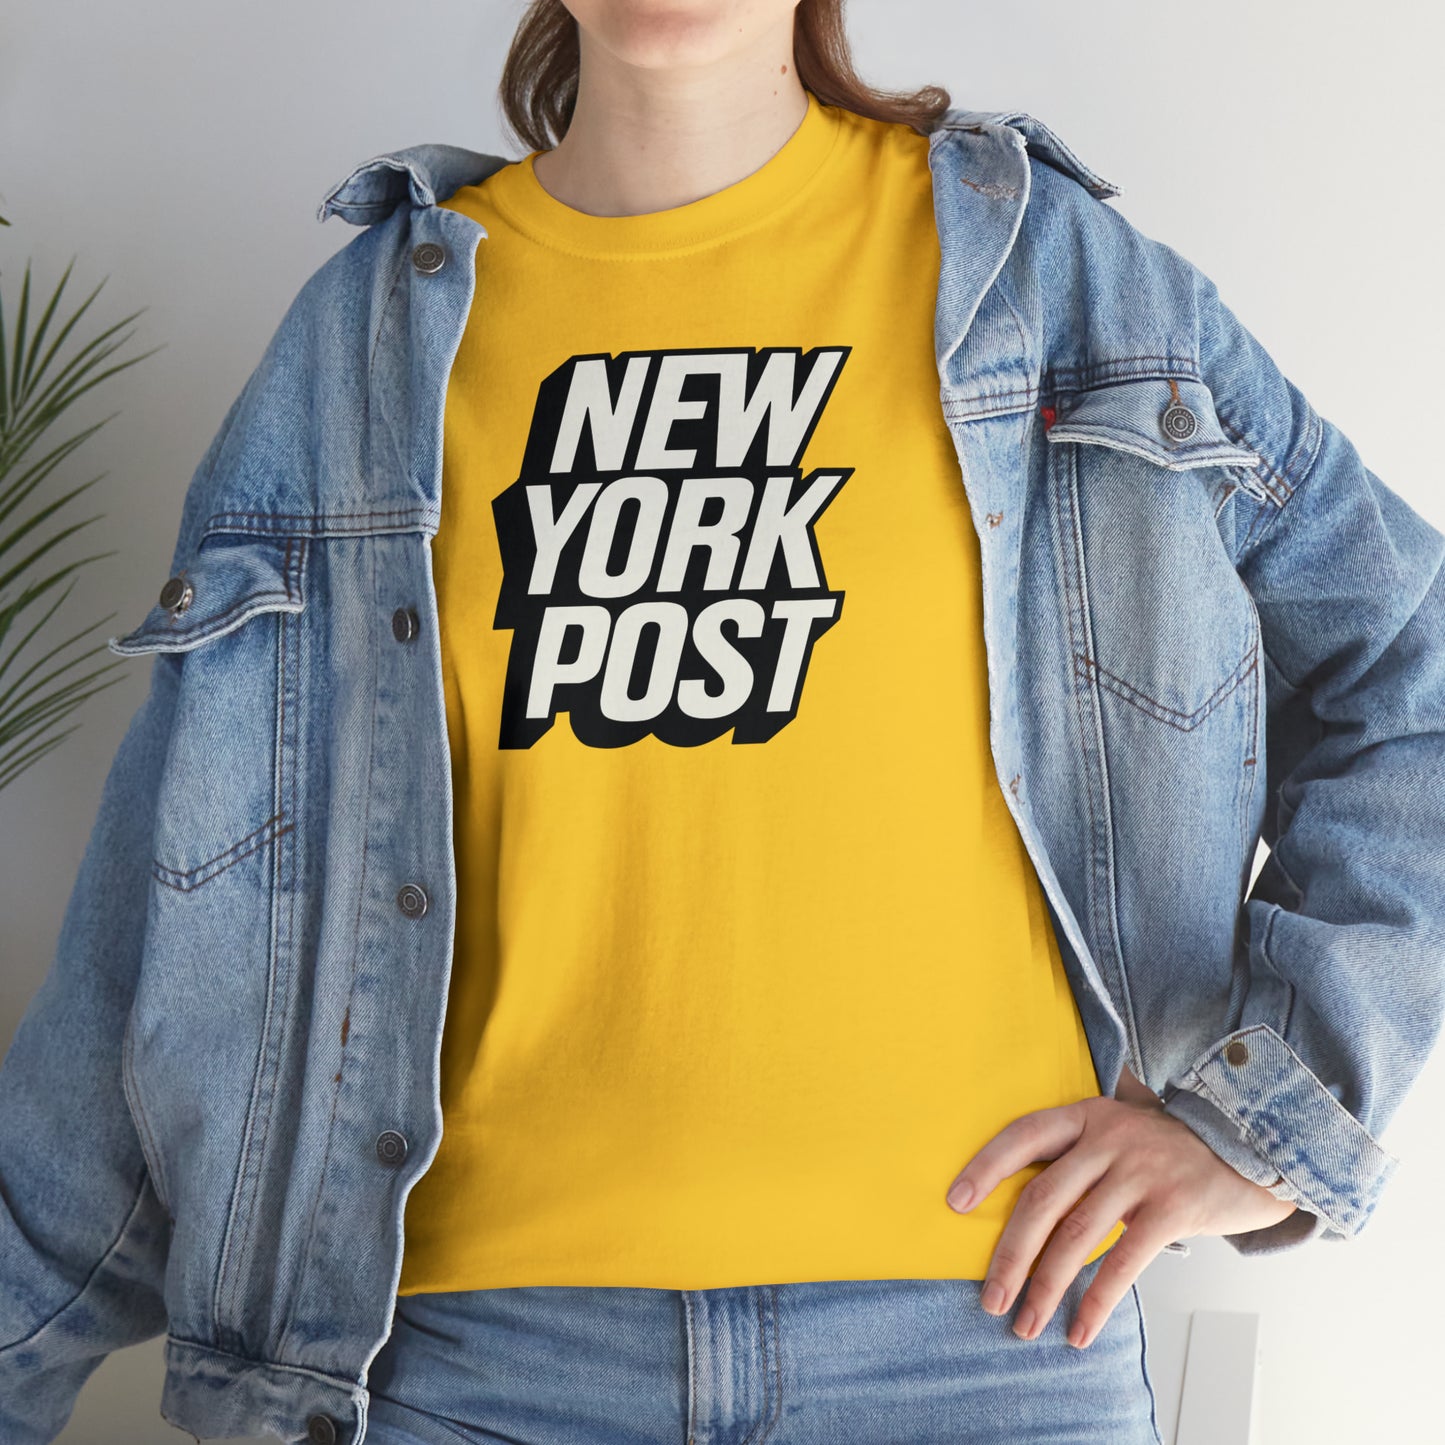 NY Post T-Shirt